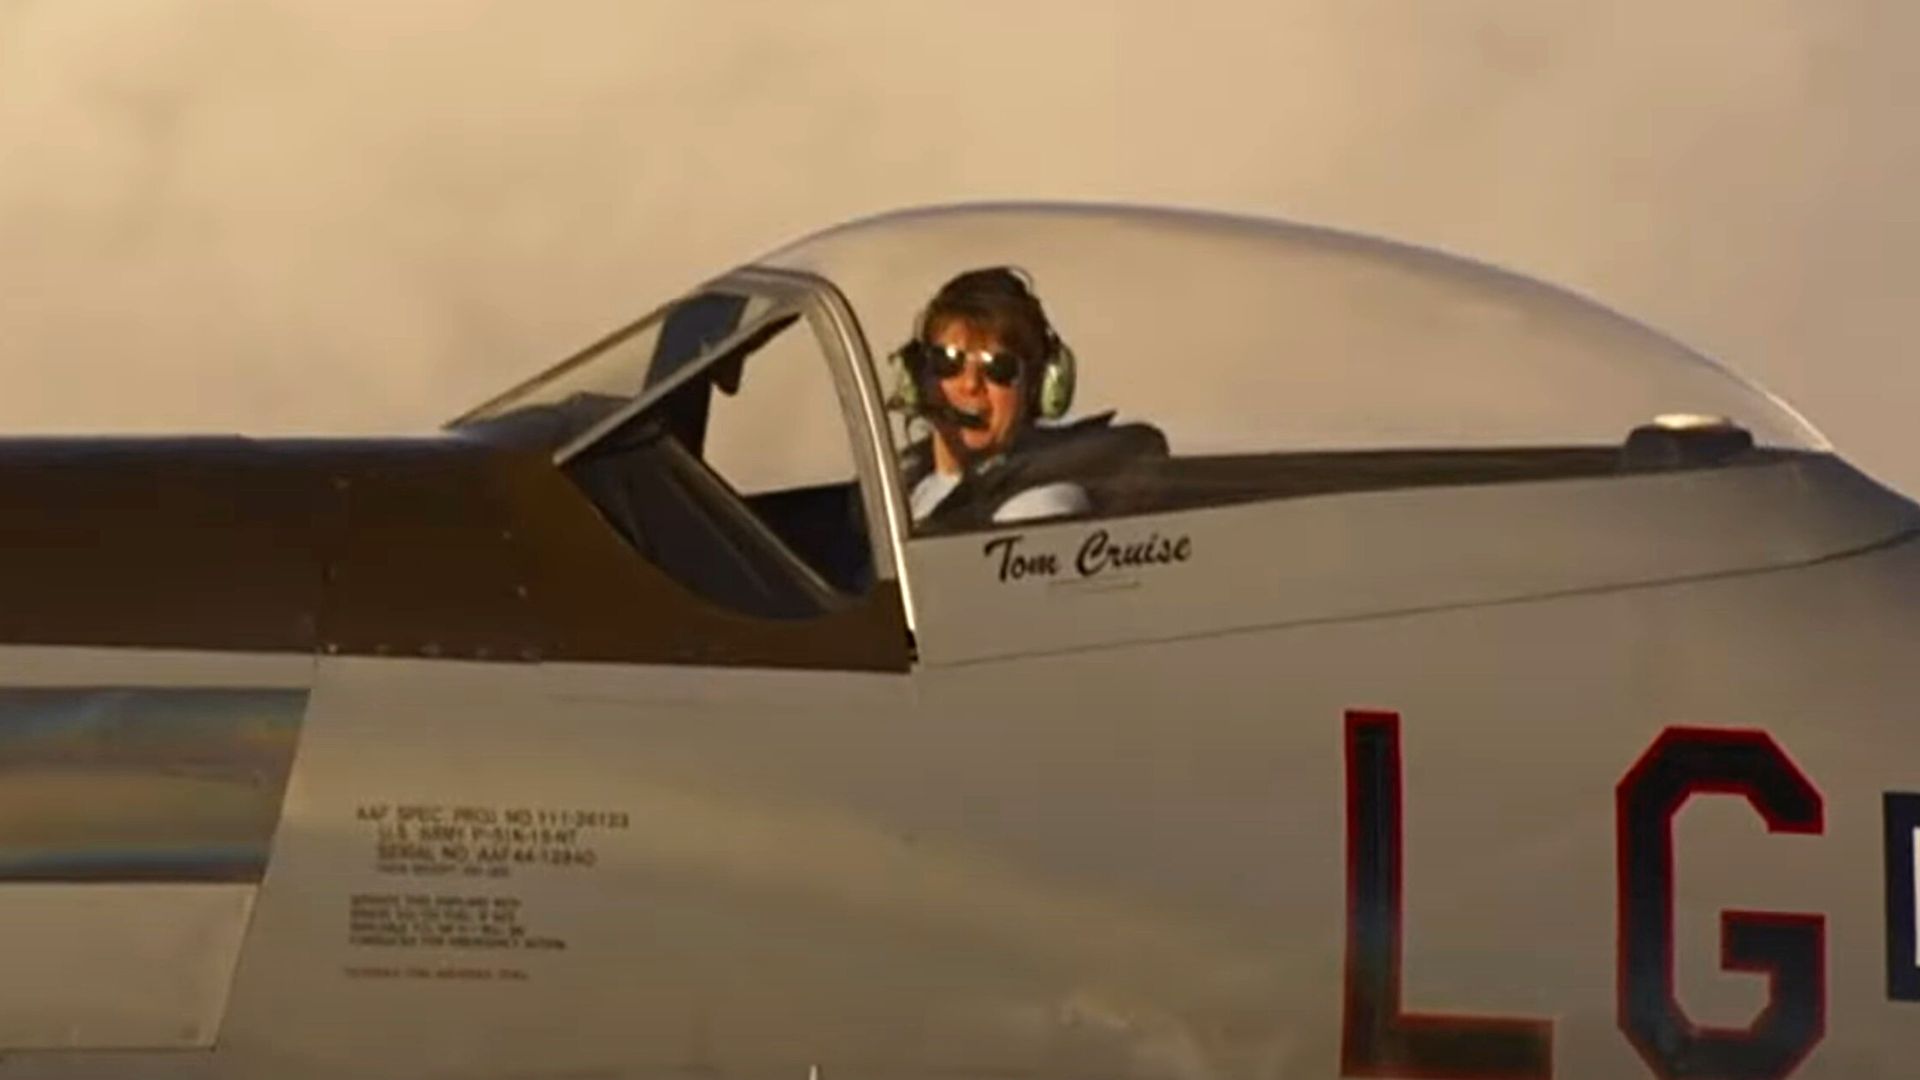 À bord d'un avion, Tom Cruise rend hommage à Charles III dans une vidéo géniale